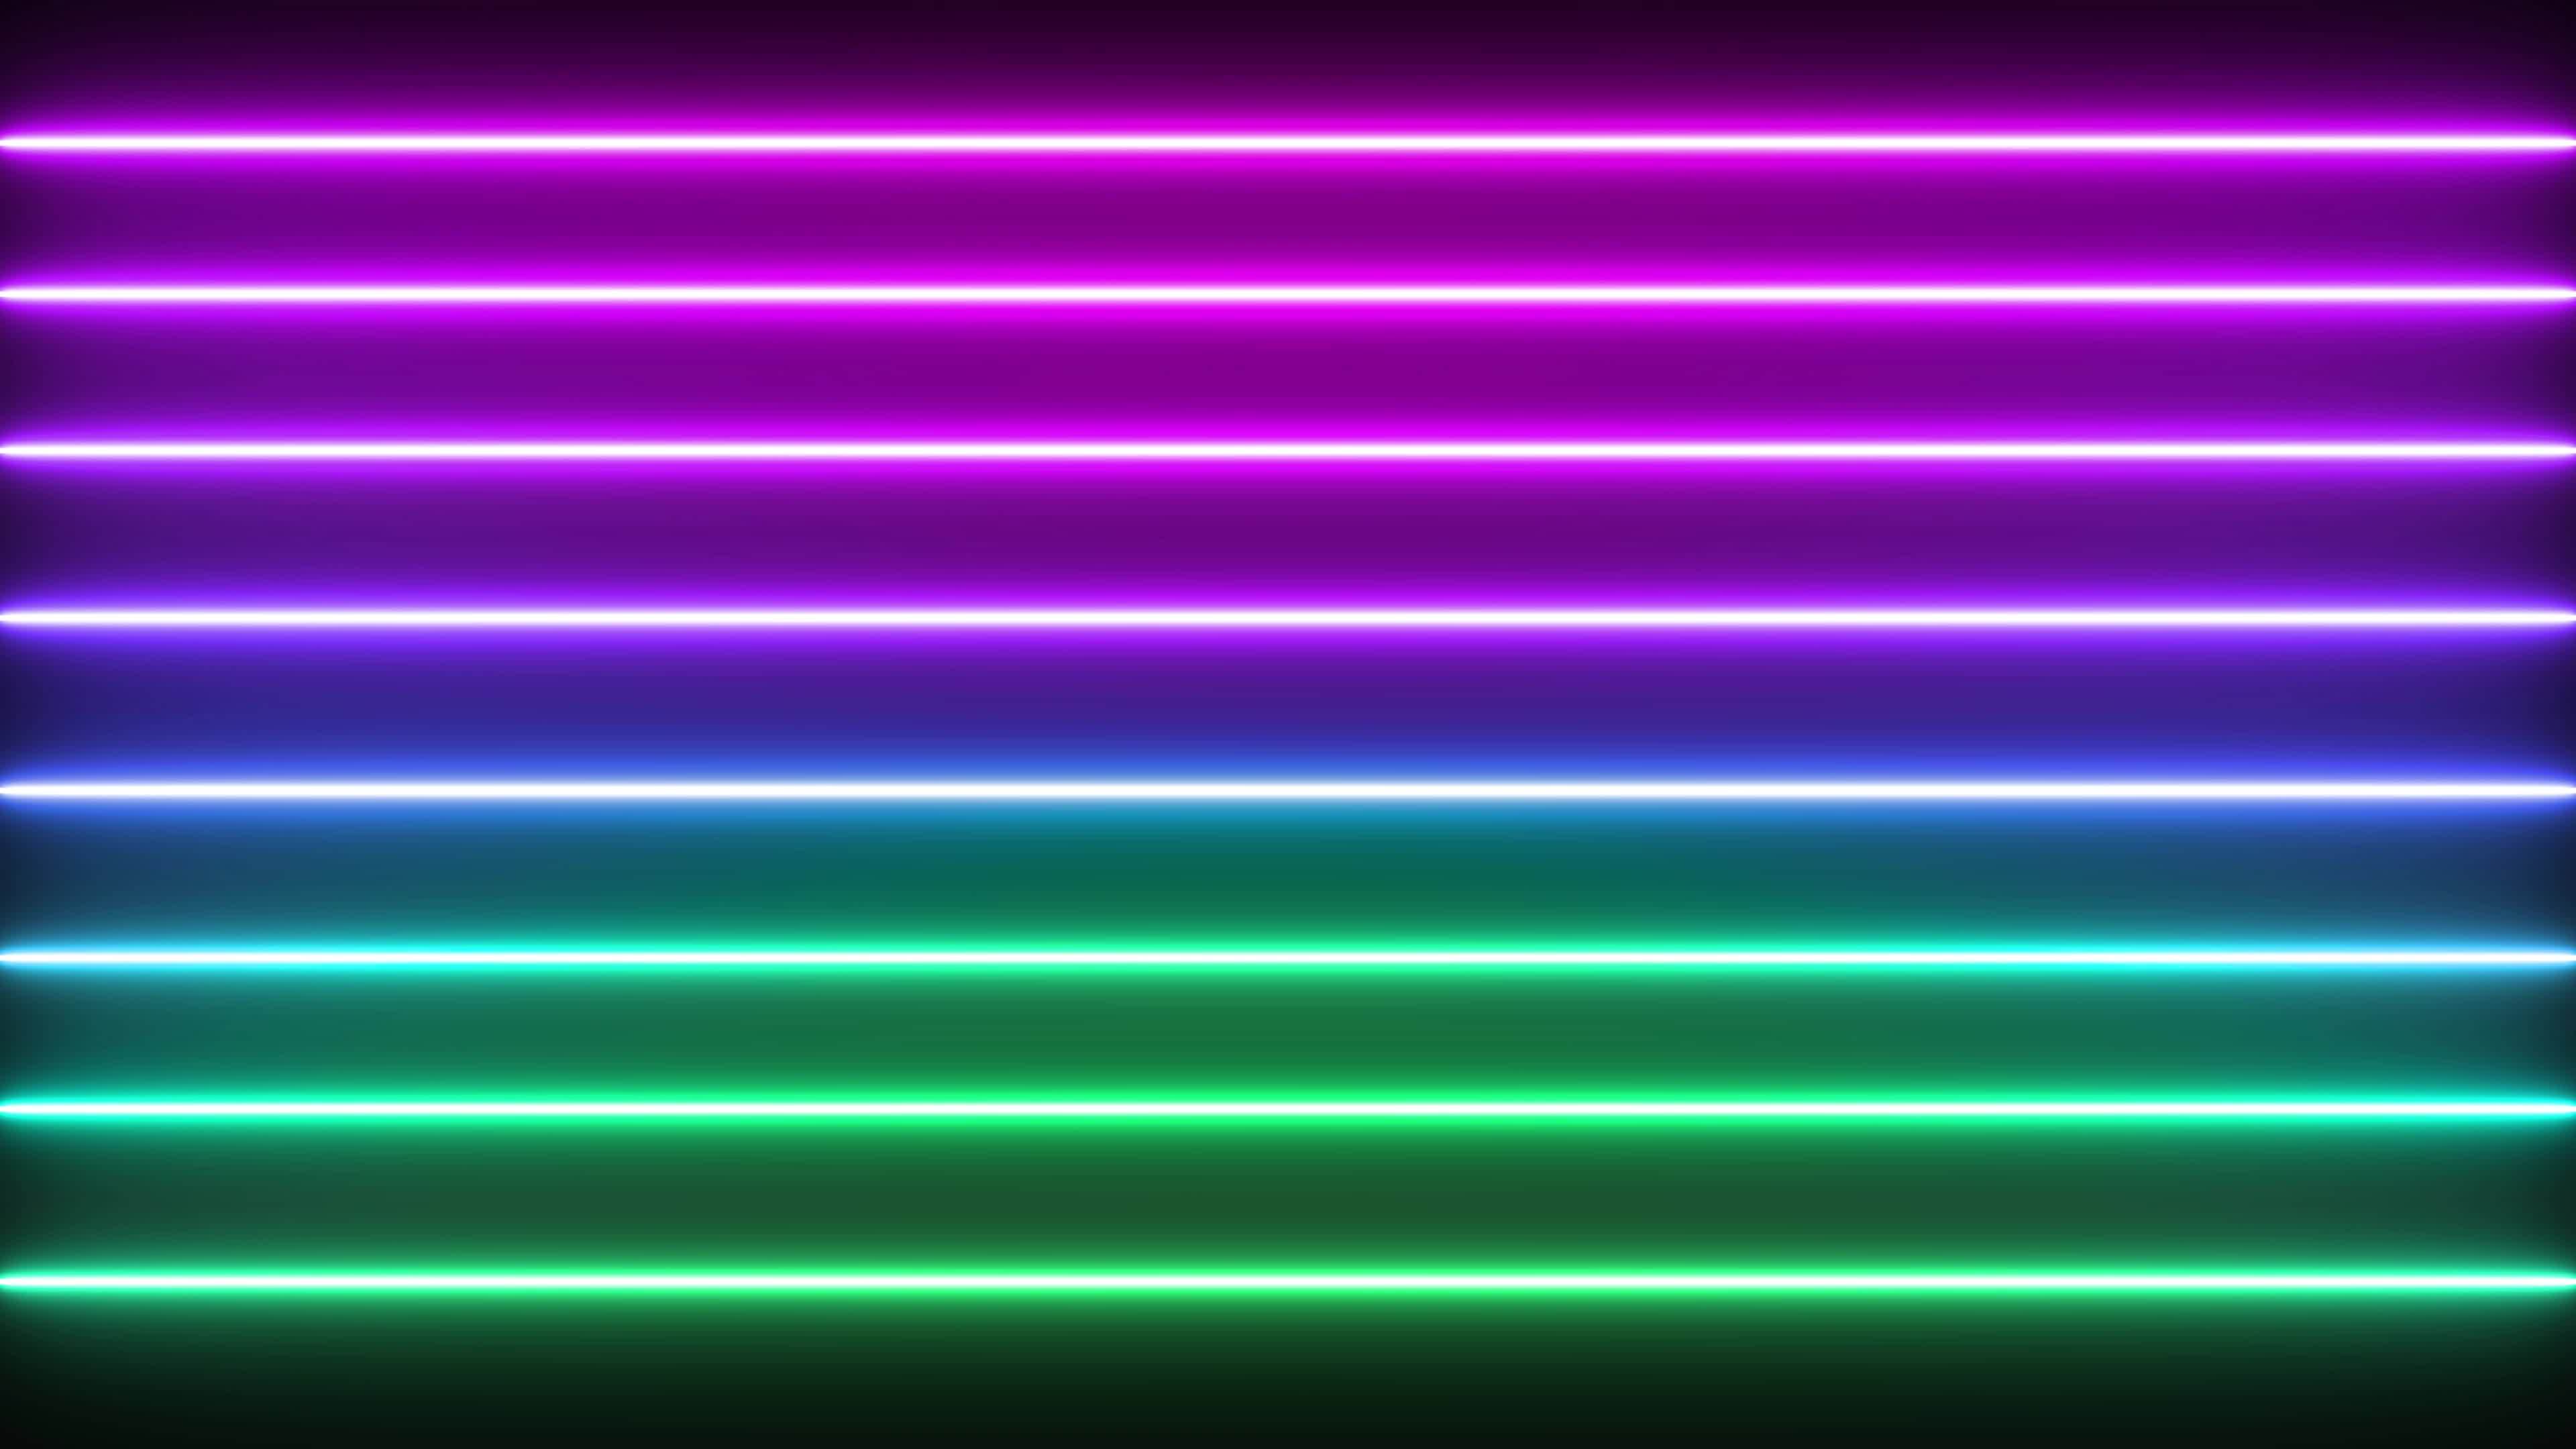 Vòng thông tin nền ánh sáng Neon nhiều màu động ngang, ấn tượng và sáng tạo. Với chất lượng hình ảnh đến 4K 60Fps, hình ảnh đầy màu sắc và động lực sẽ mang đến cho bạn trải nghiệm tuyệt vời. Hãy bấm play và tham gia vào chuyến phiêu lưu cùng vòng thông tin đầy màu sắc nhé!